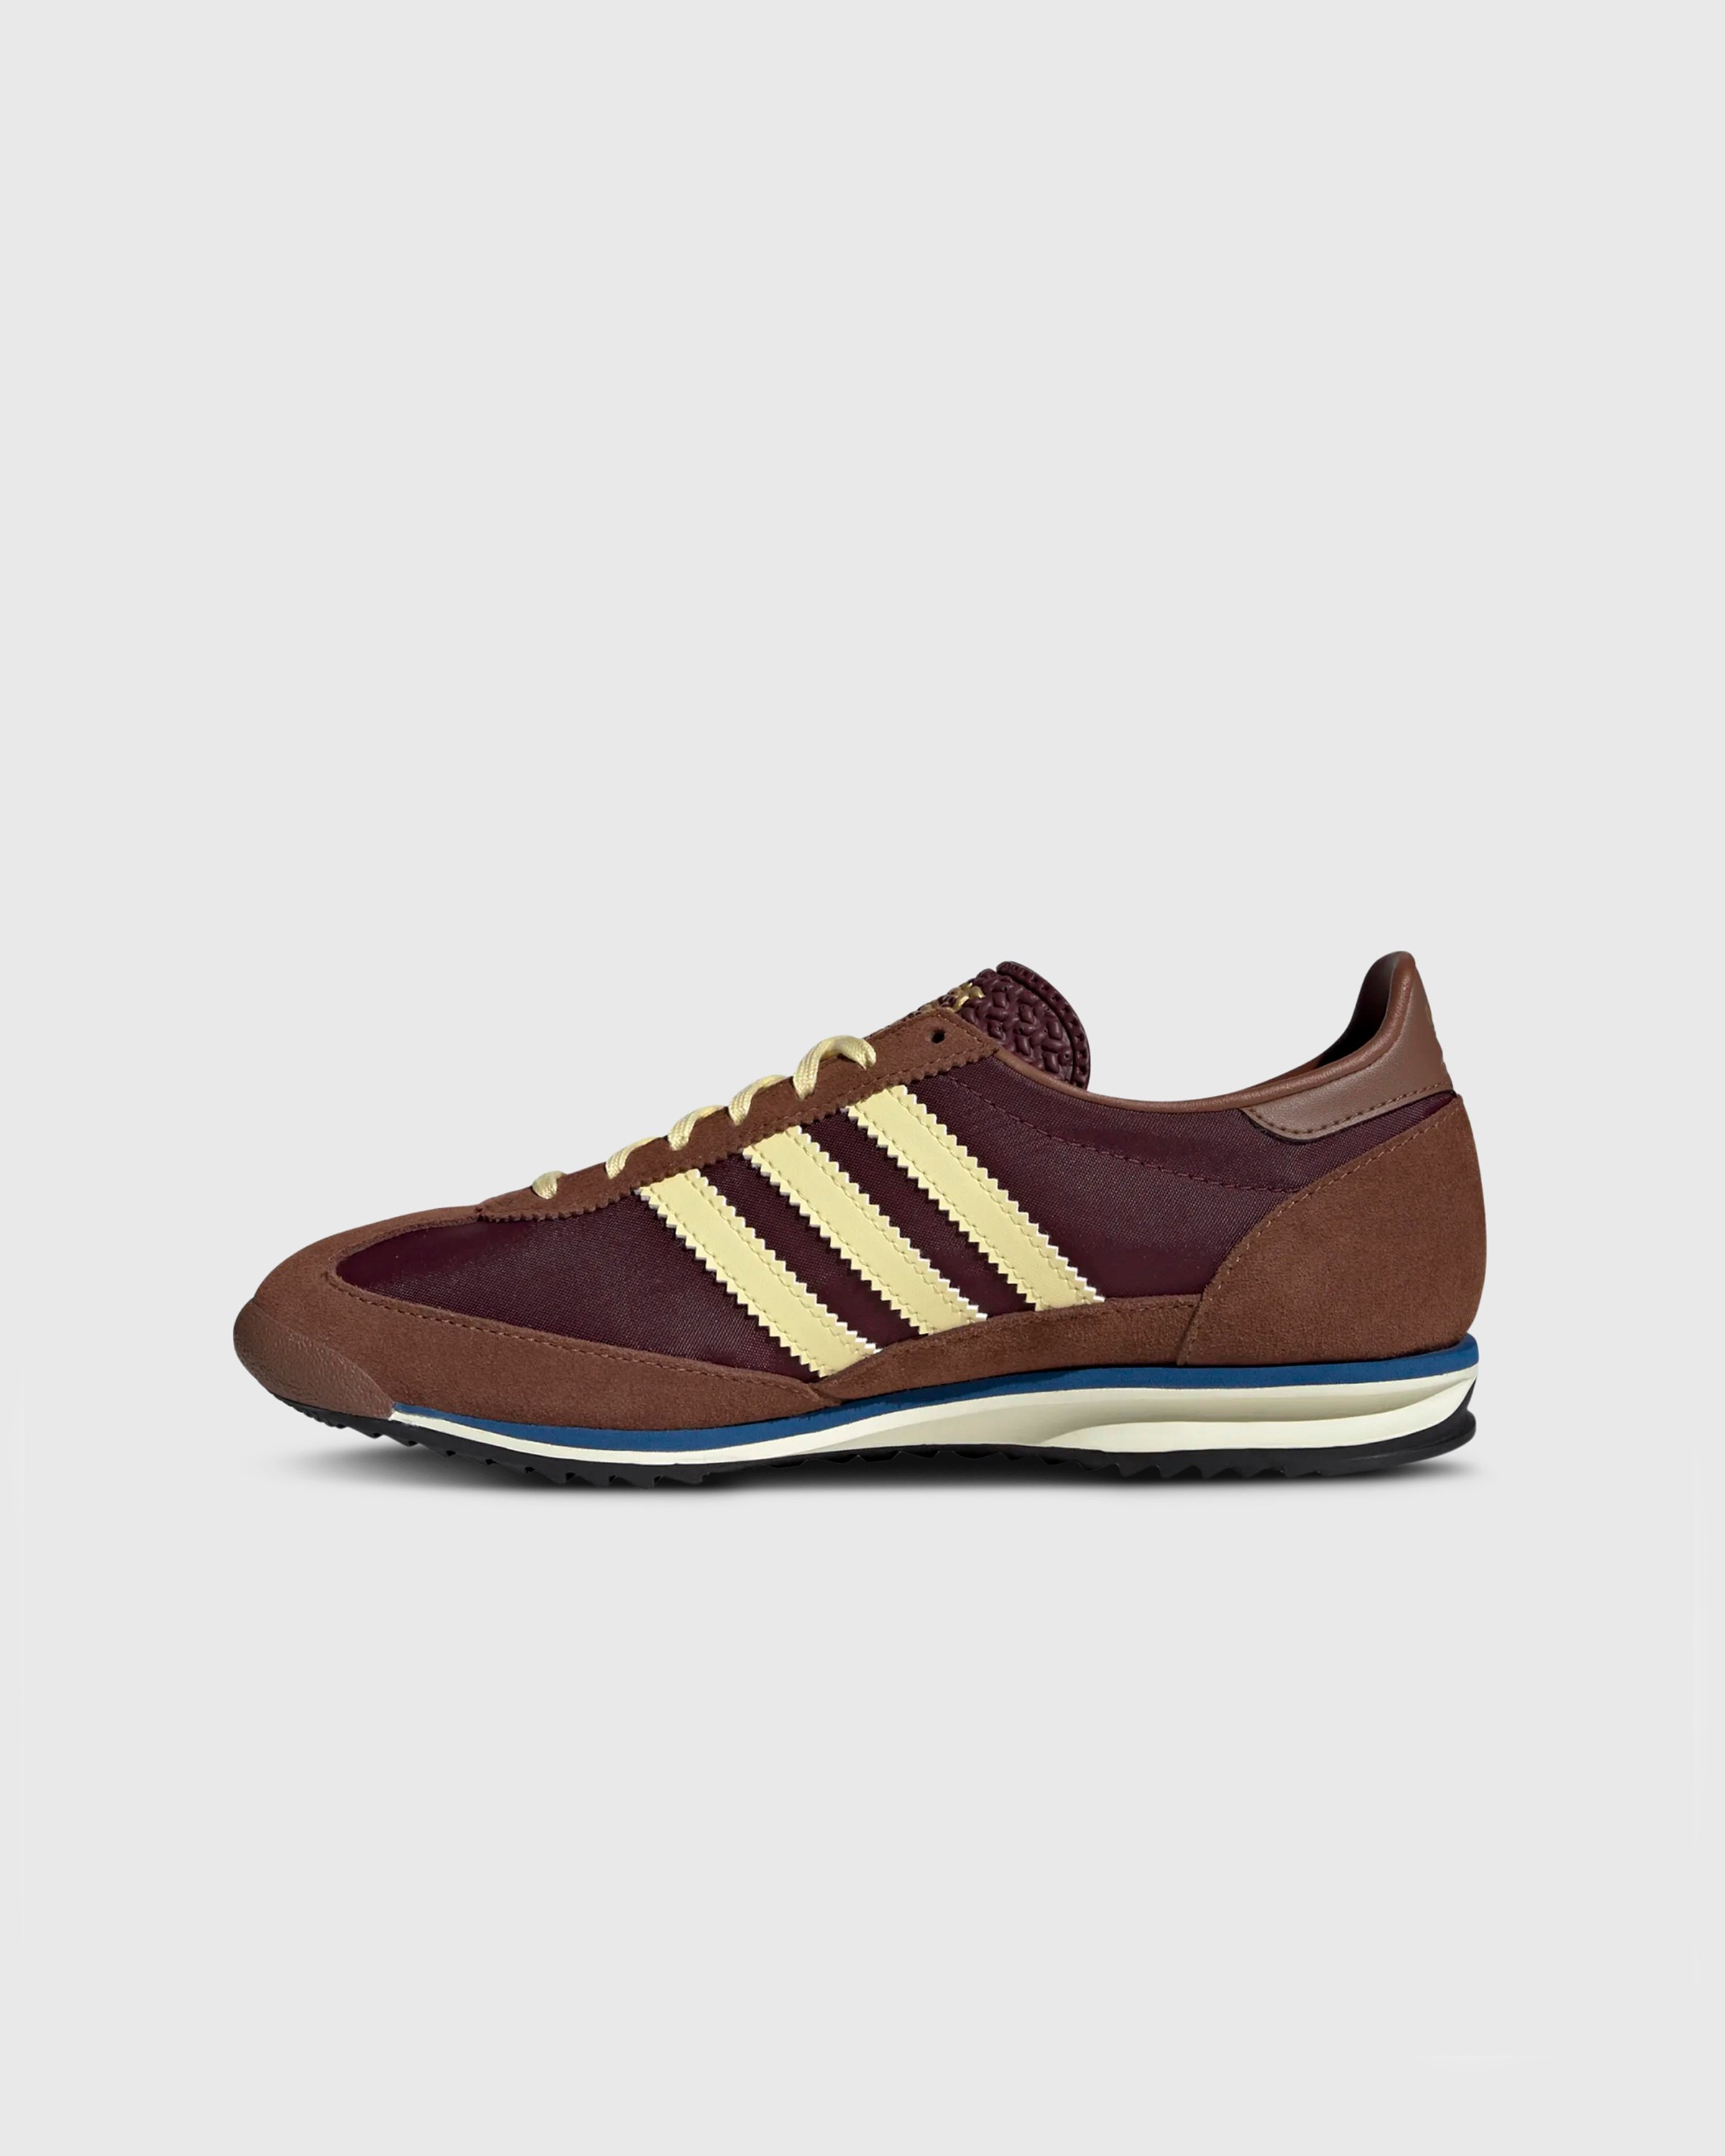 Adidas - SL 72 OG W          MAROON/ALMYEL/PREBRN - Footwear - Brown - Image 2